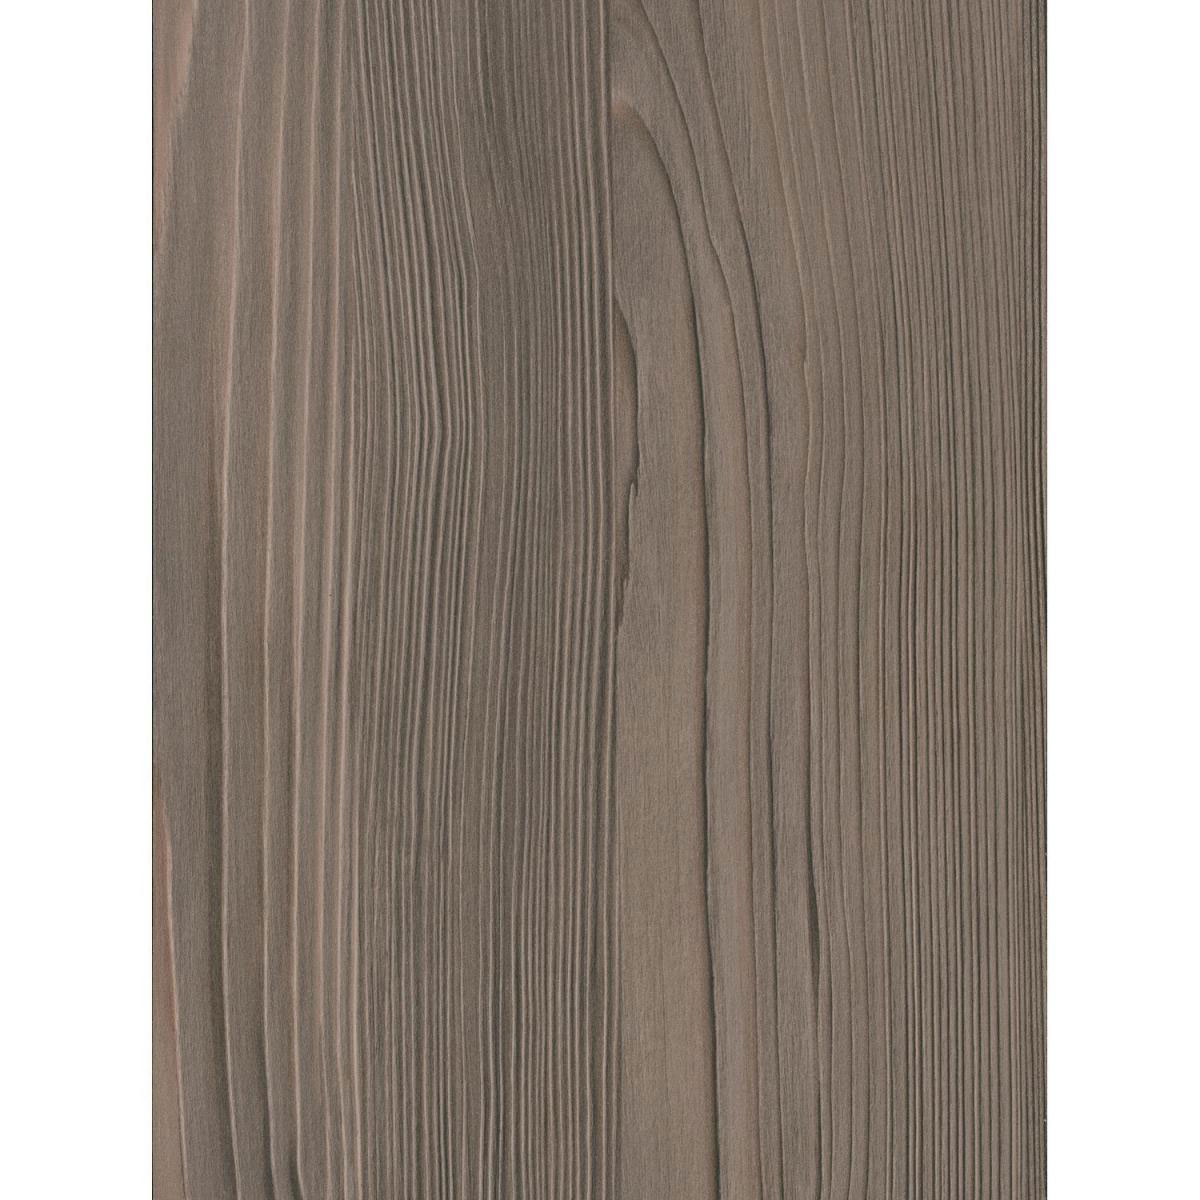 Wandanschlussprofil Plus „kupferesche graubraun“, 590x20x30 mm